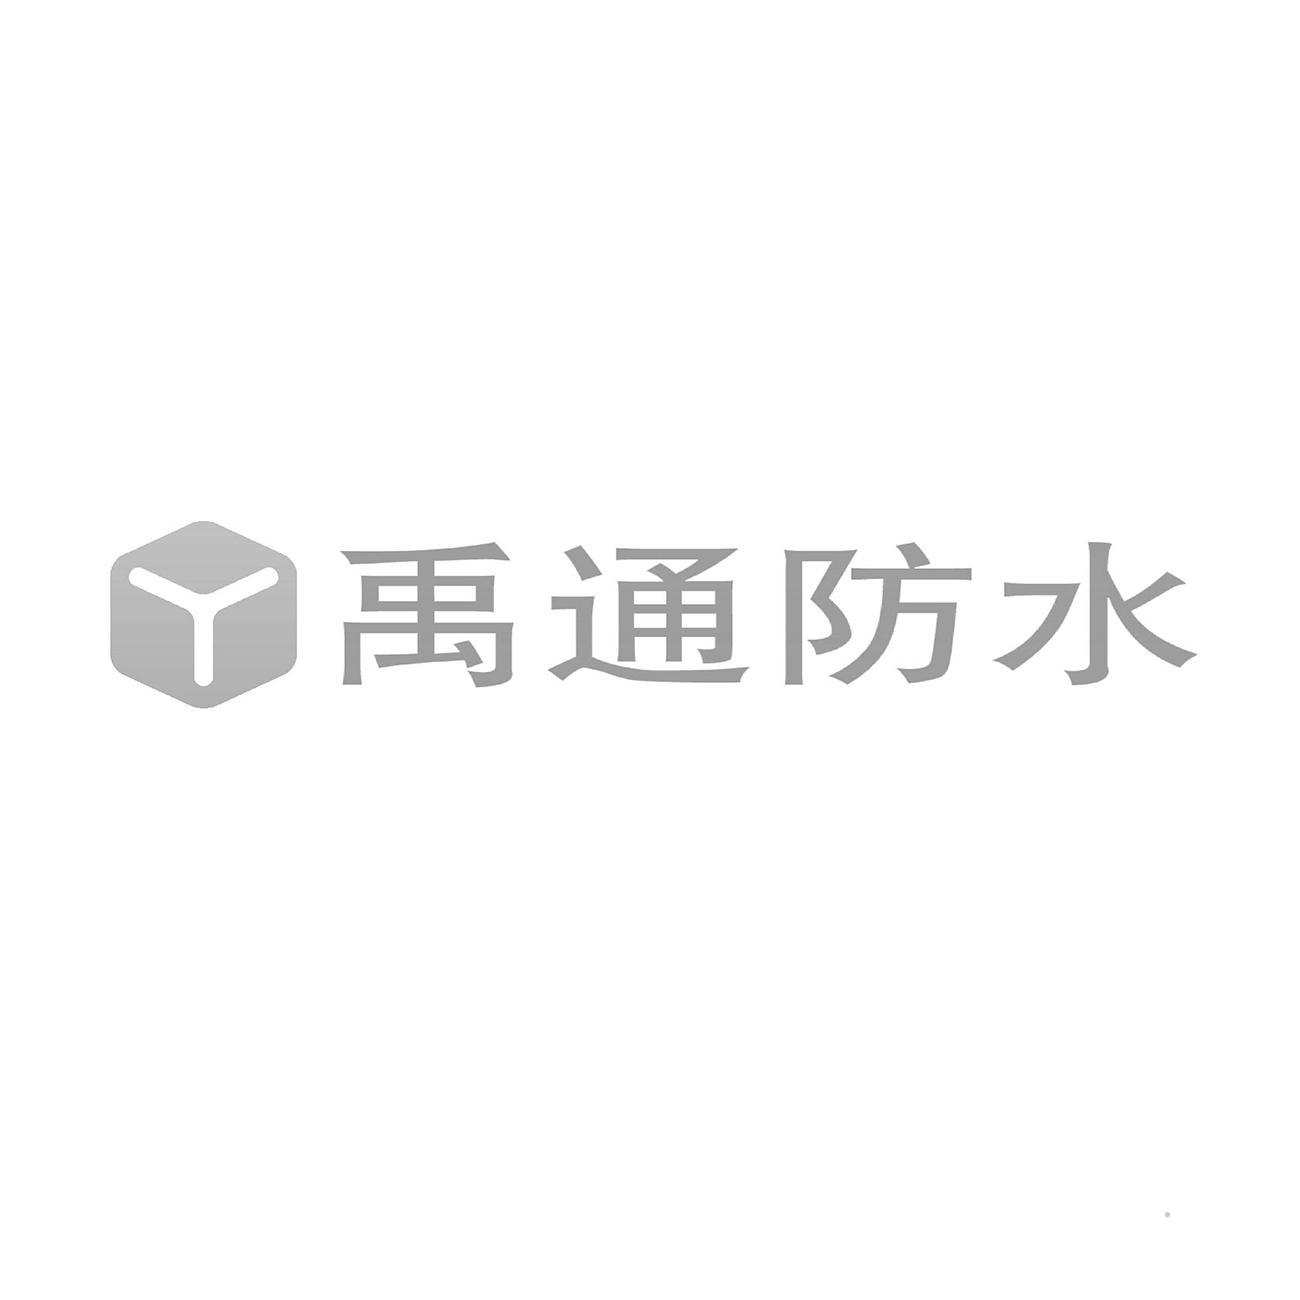 禹通防水logo